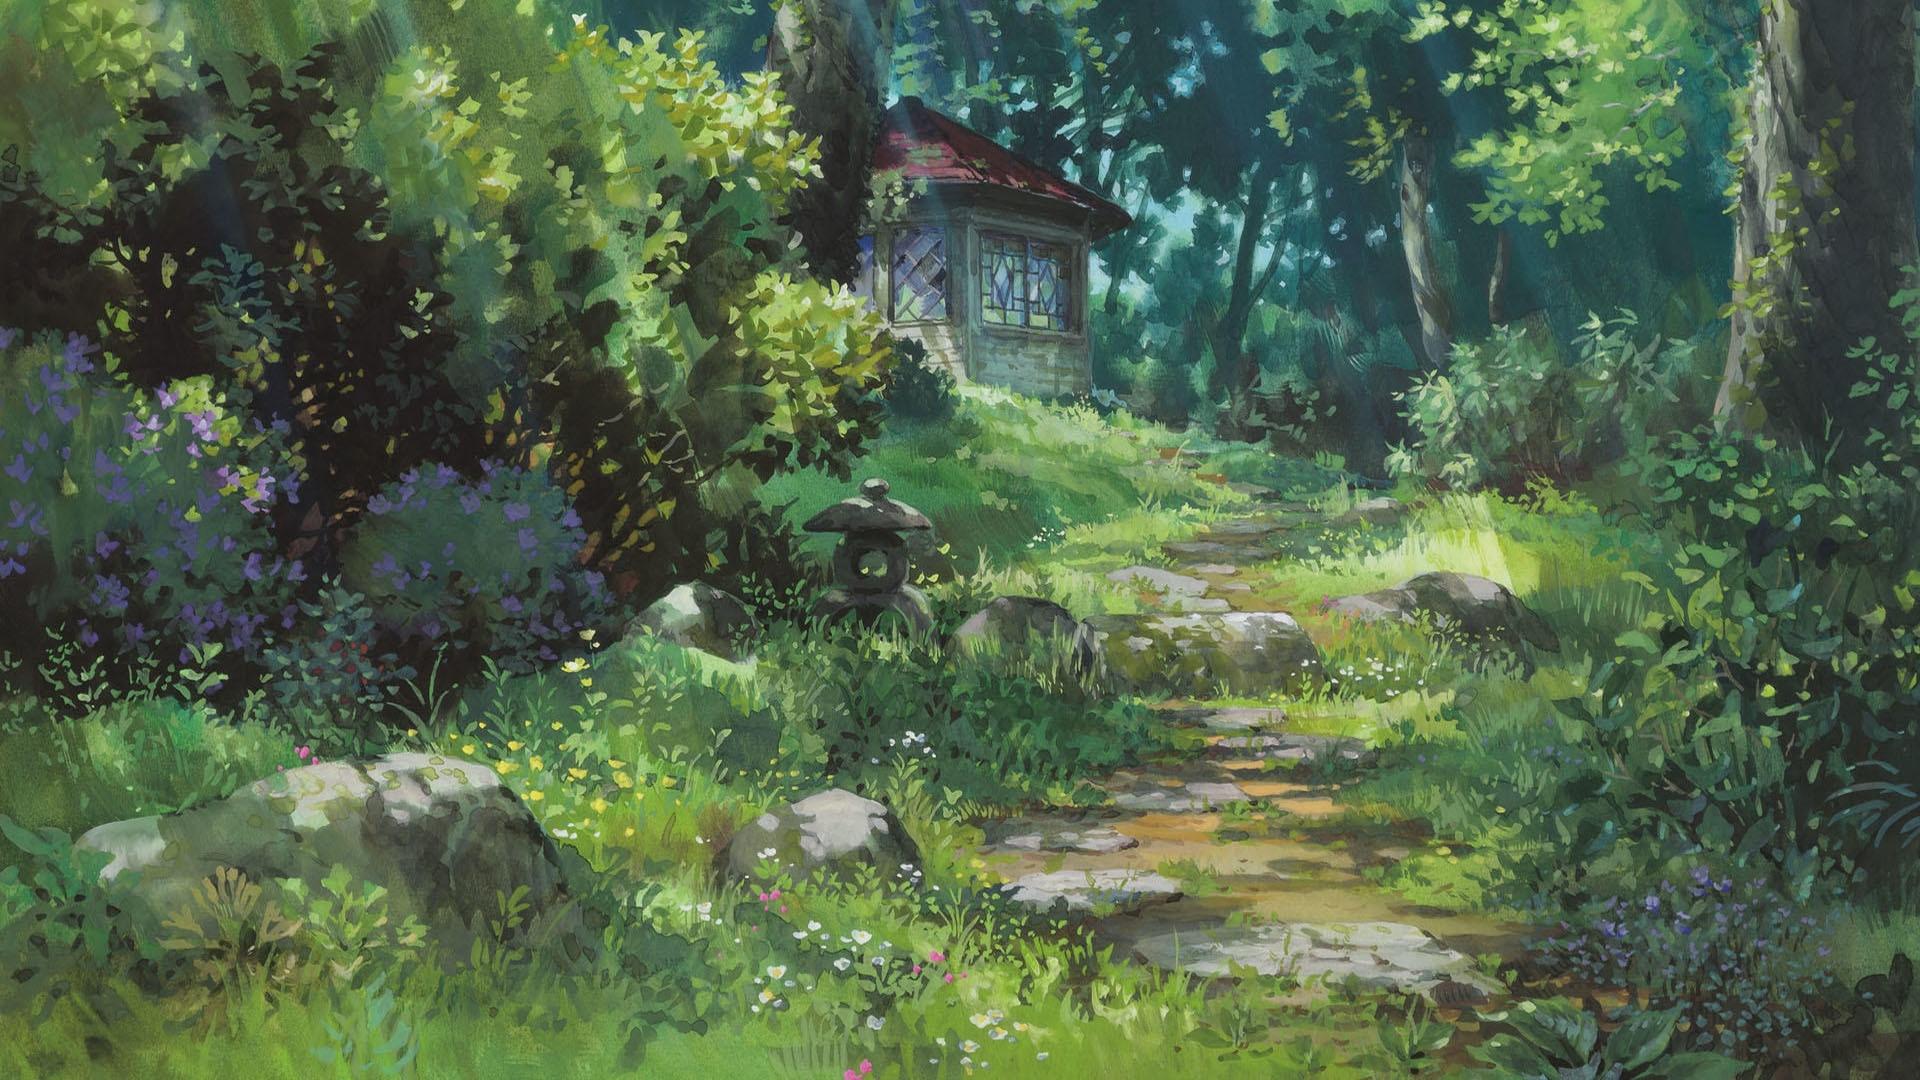 Studio Ghibli Beautiful Wallpapers - Top Free Studio Ghibli Beautiful